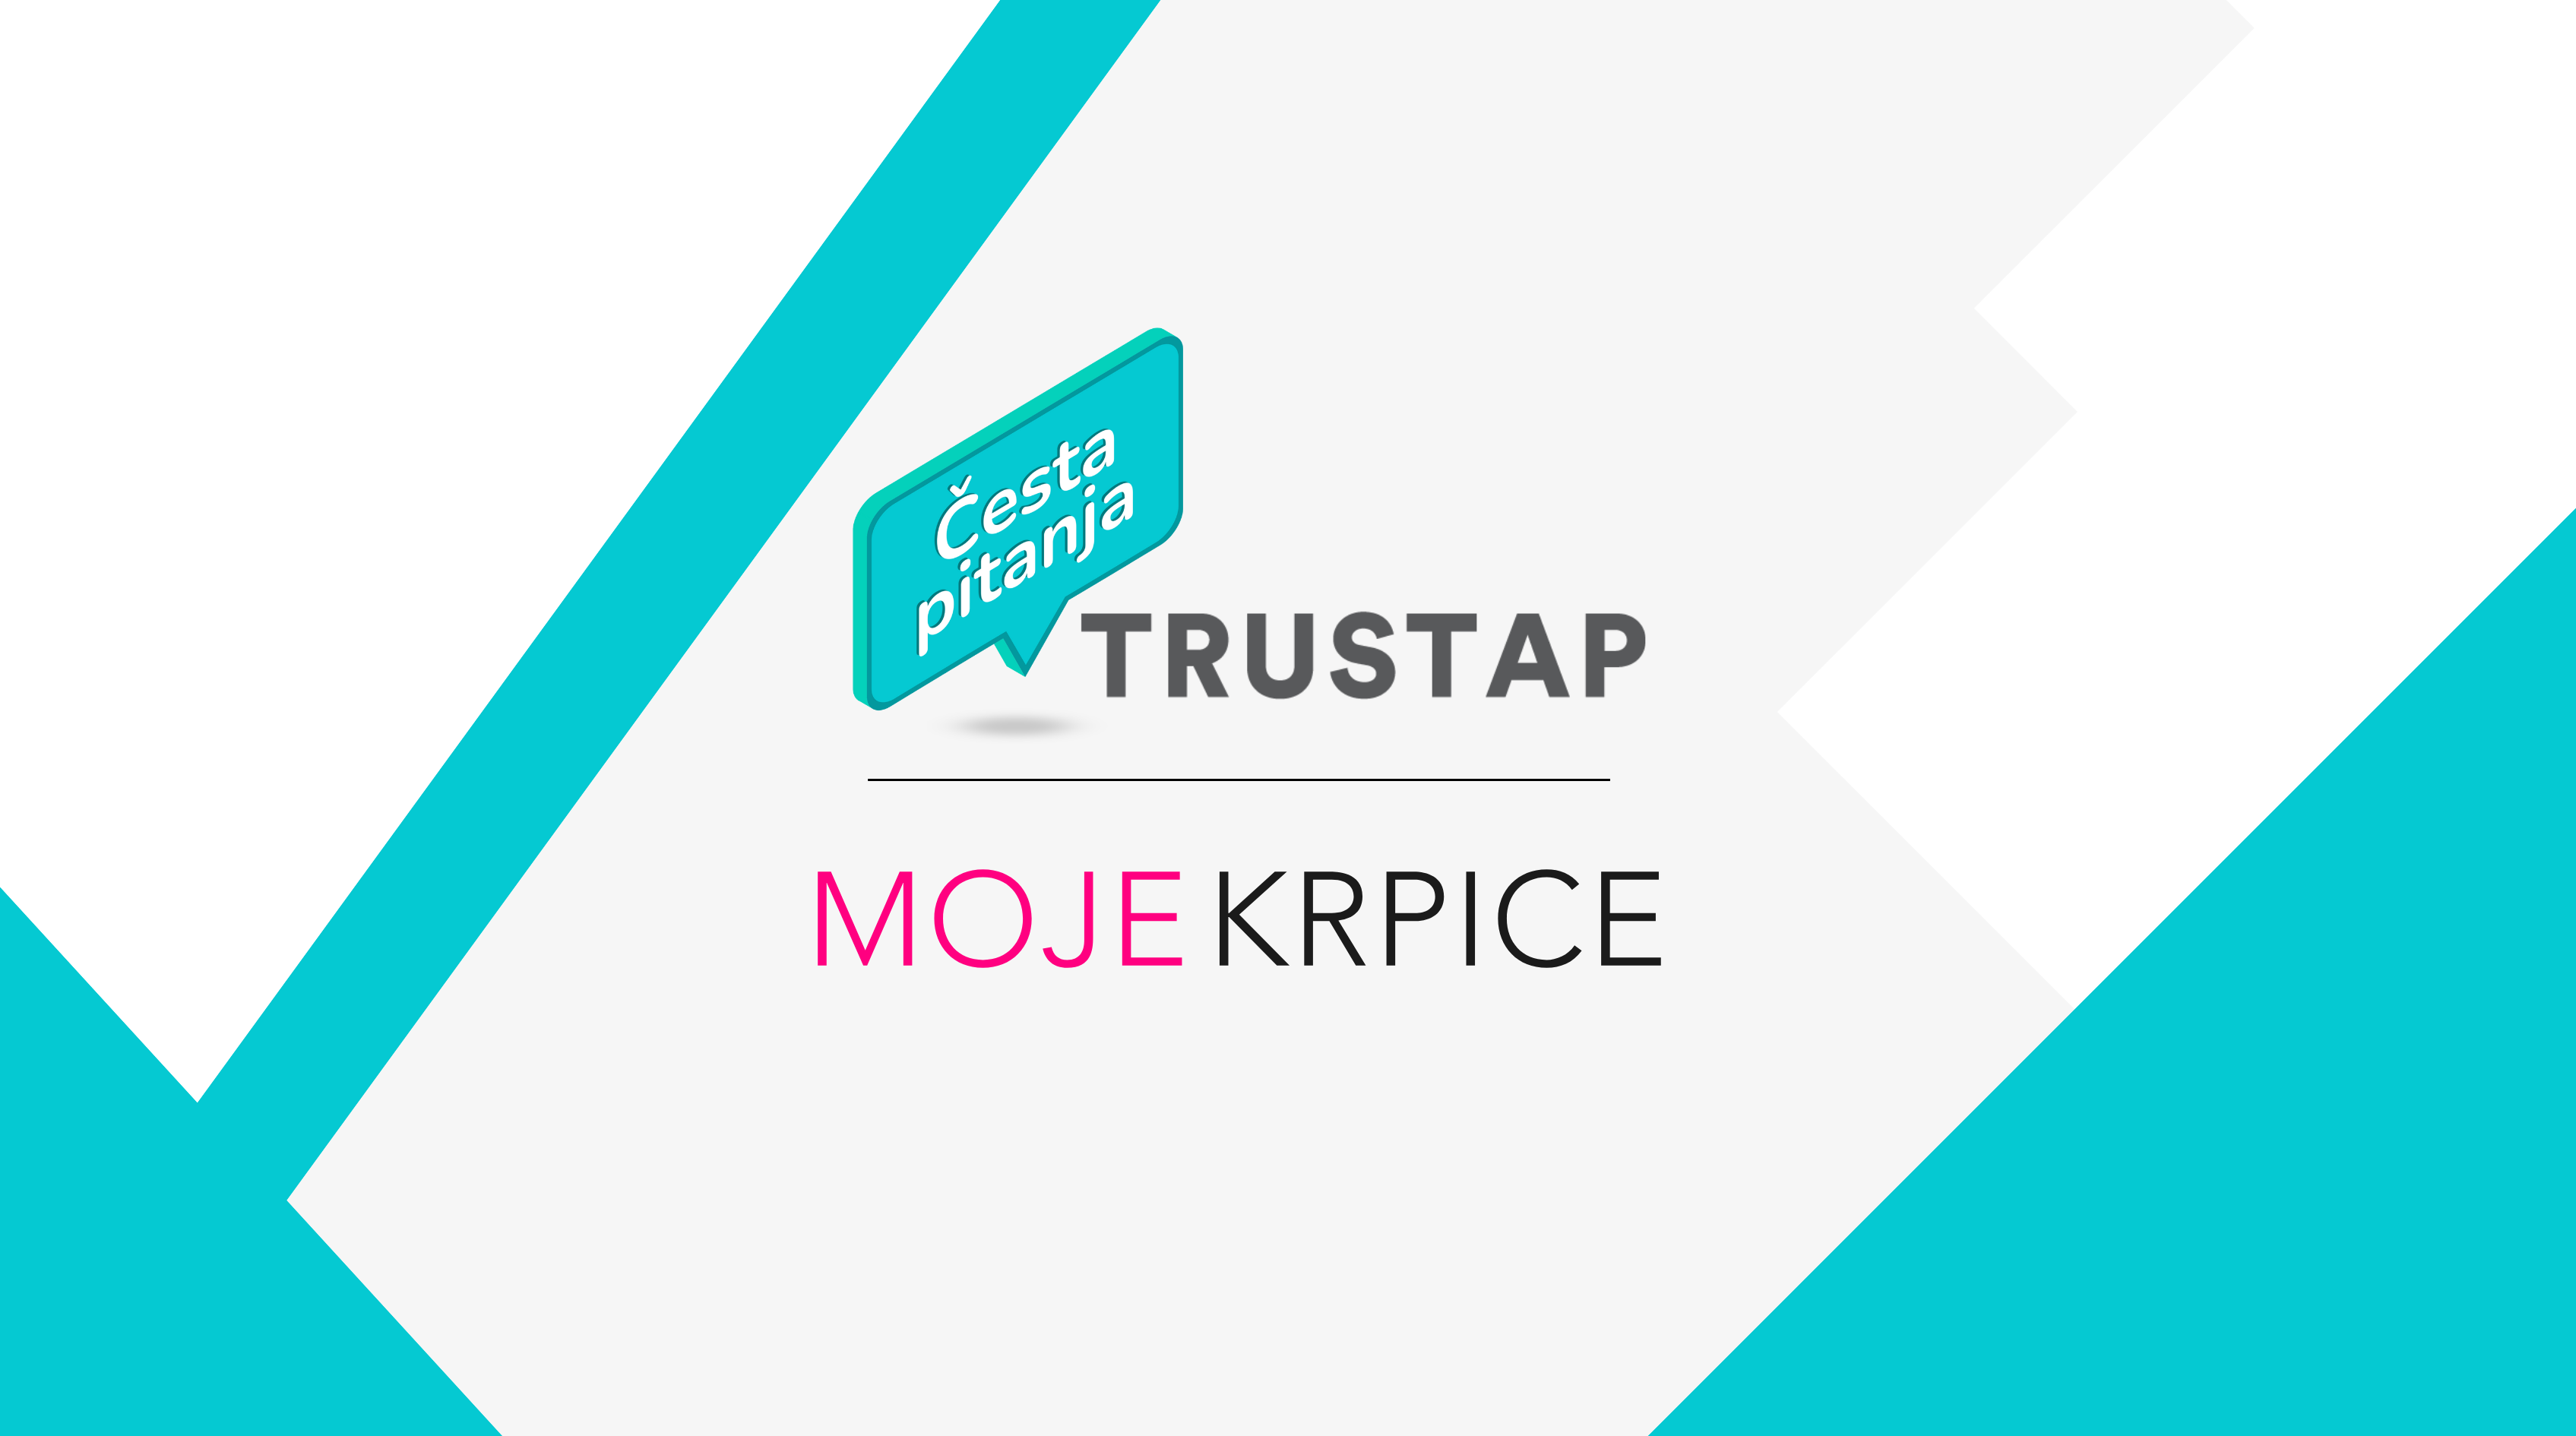 Mojekrpice & Trustap – Česta pitanja